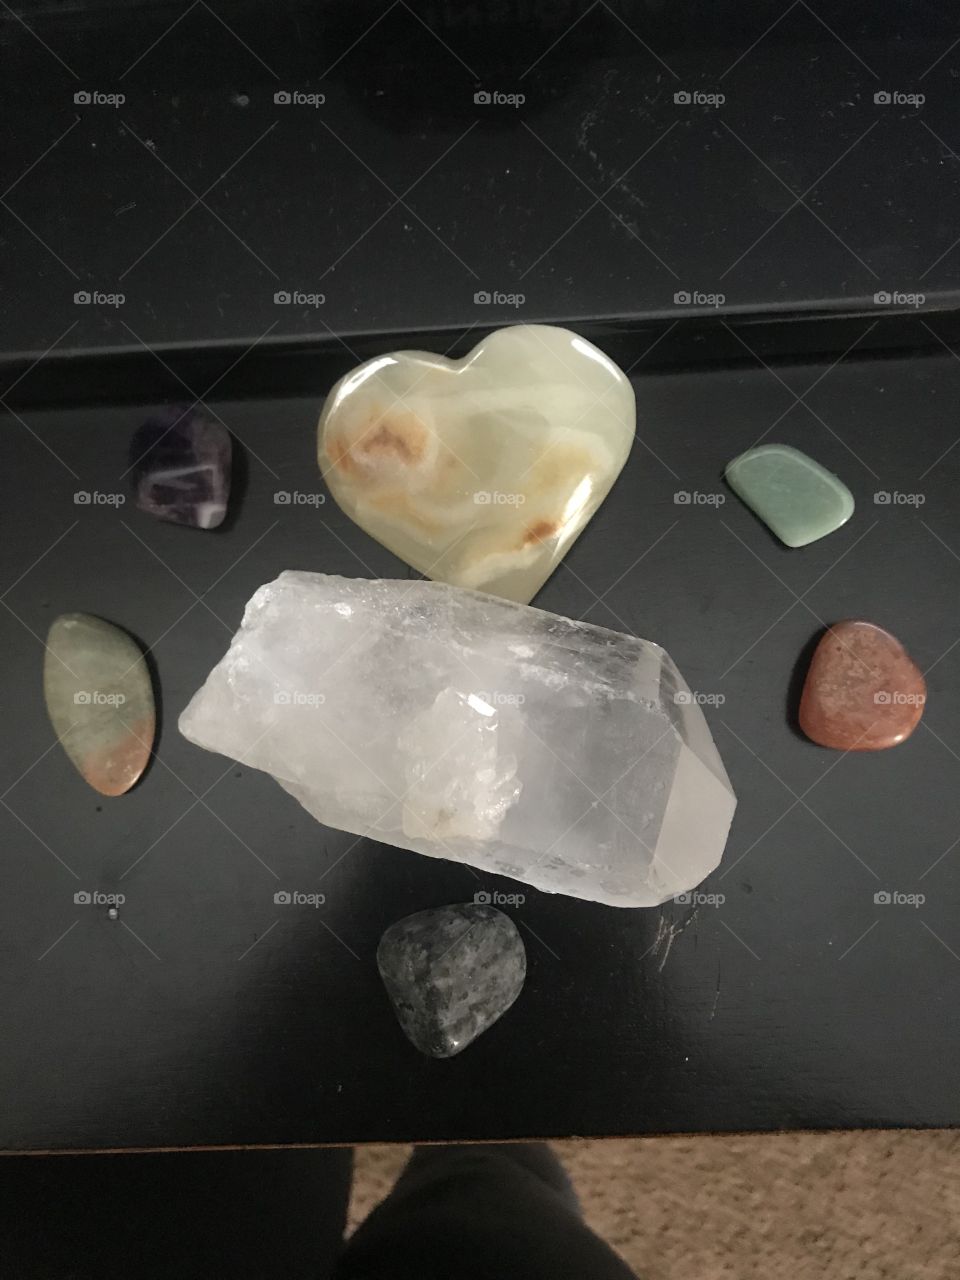 Healing stones